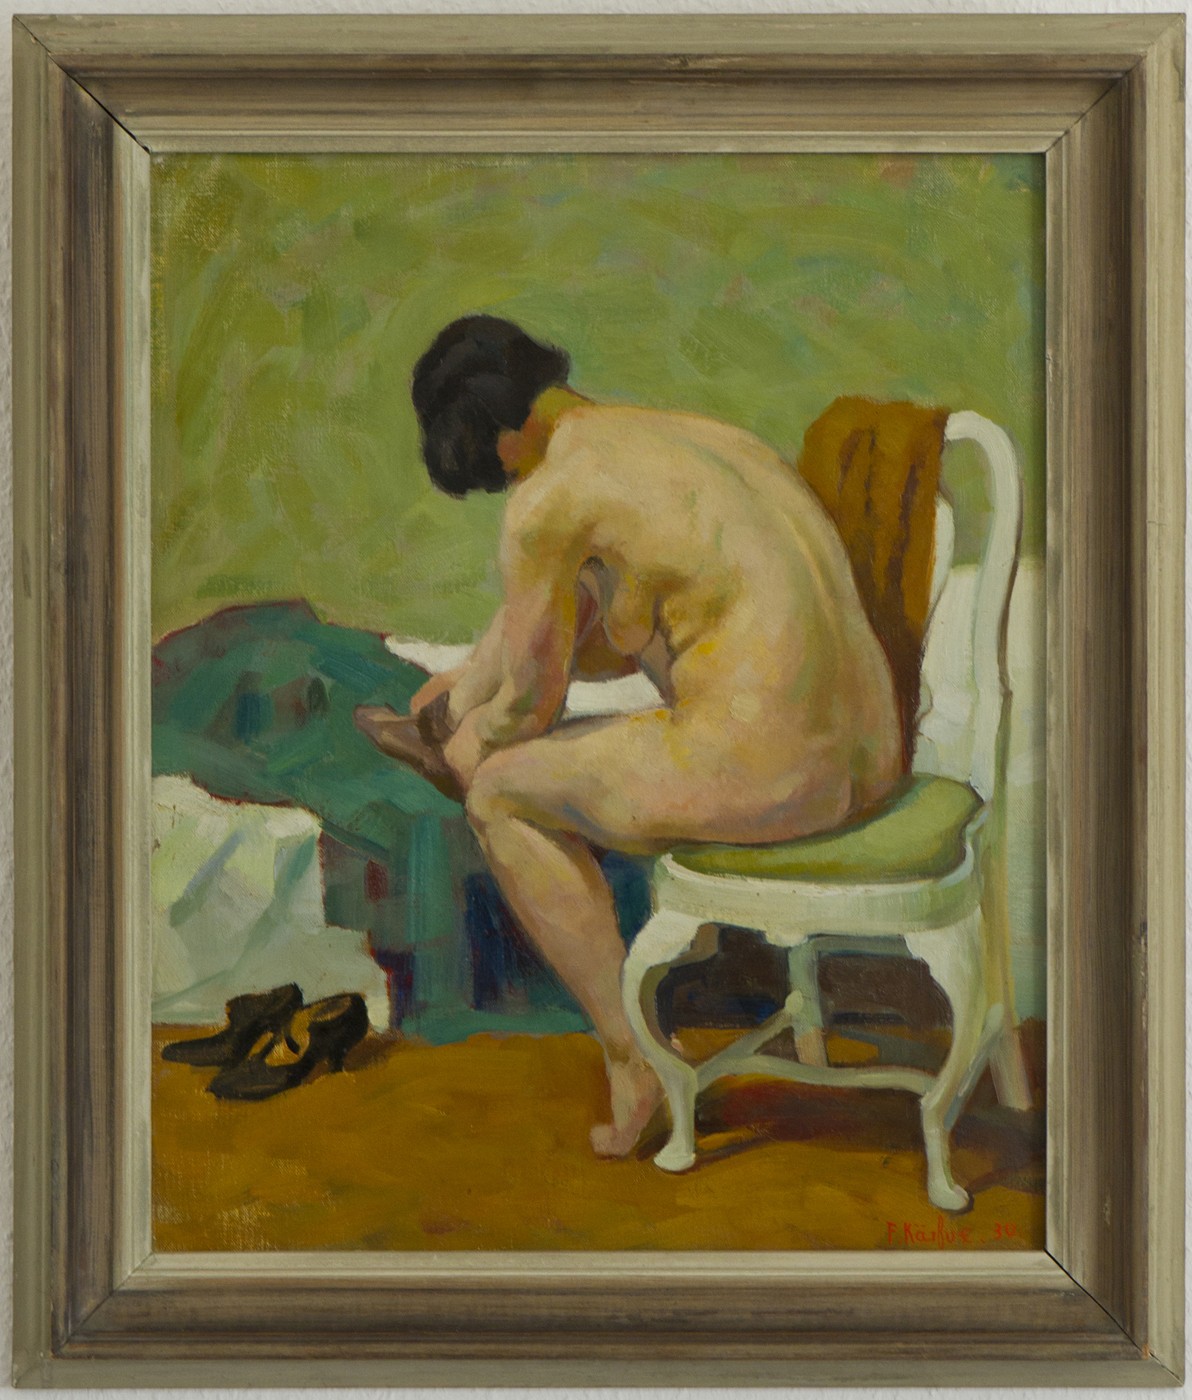 VERKAUFT! - Junge Frau beim Ankleiden (1930)